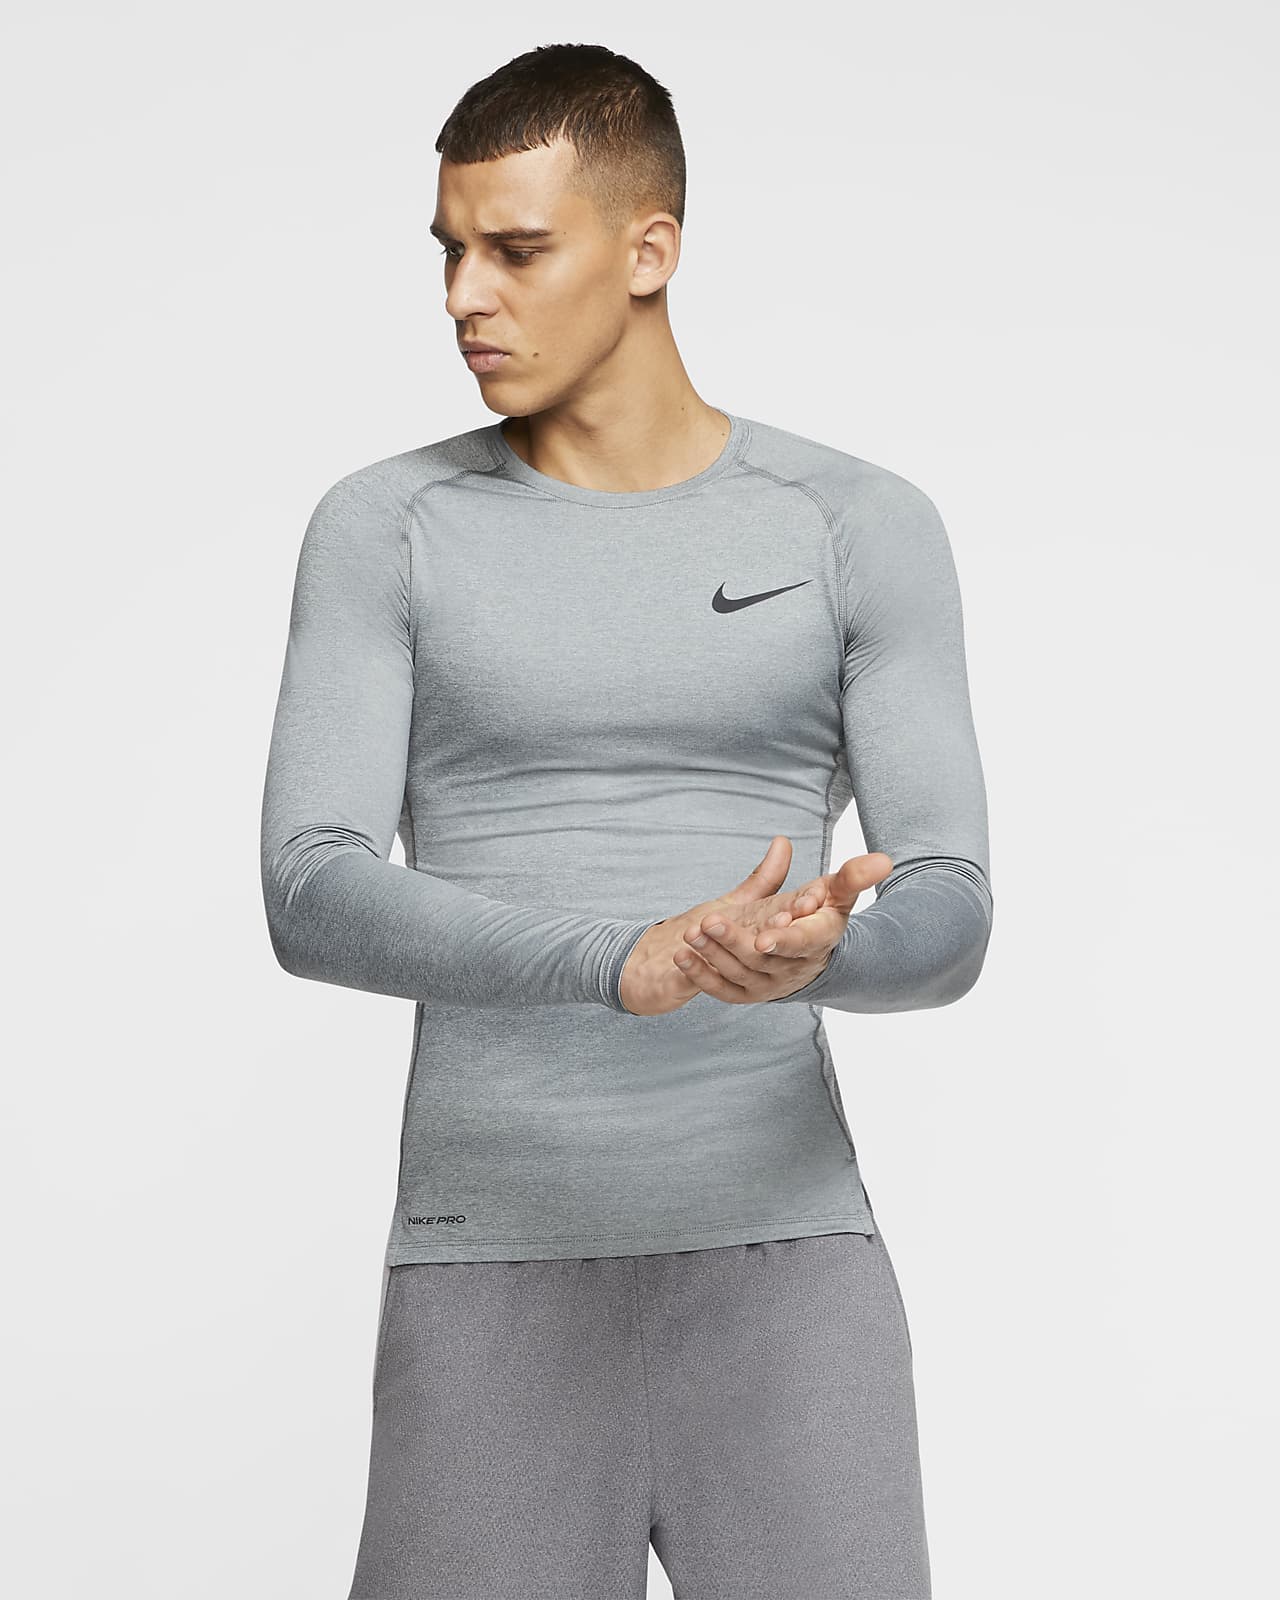 Nike Pro. Nike 